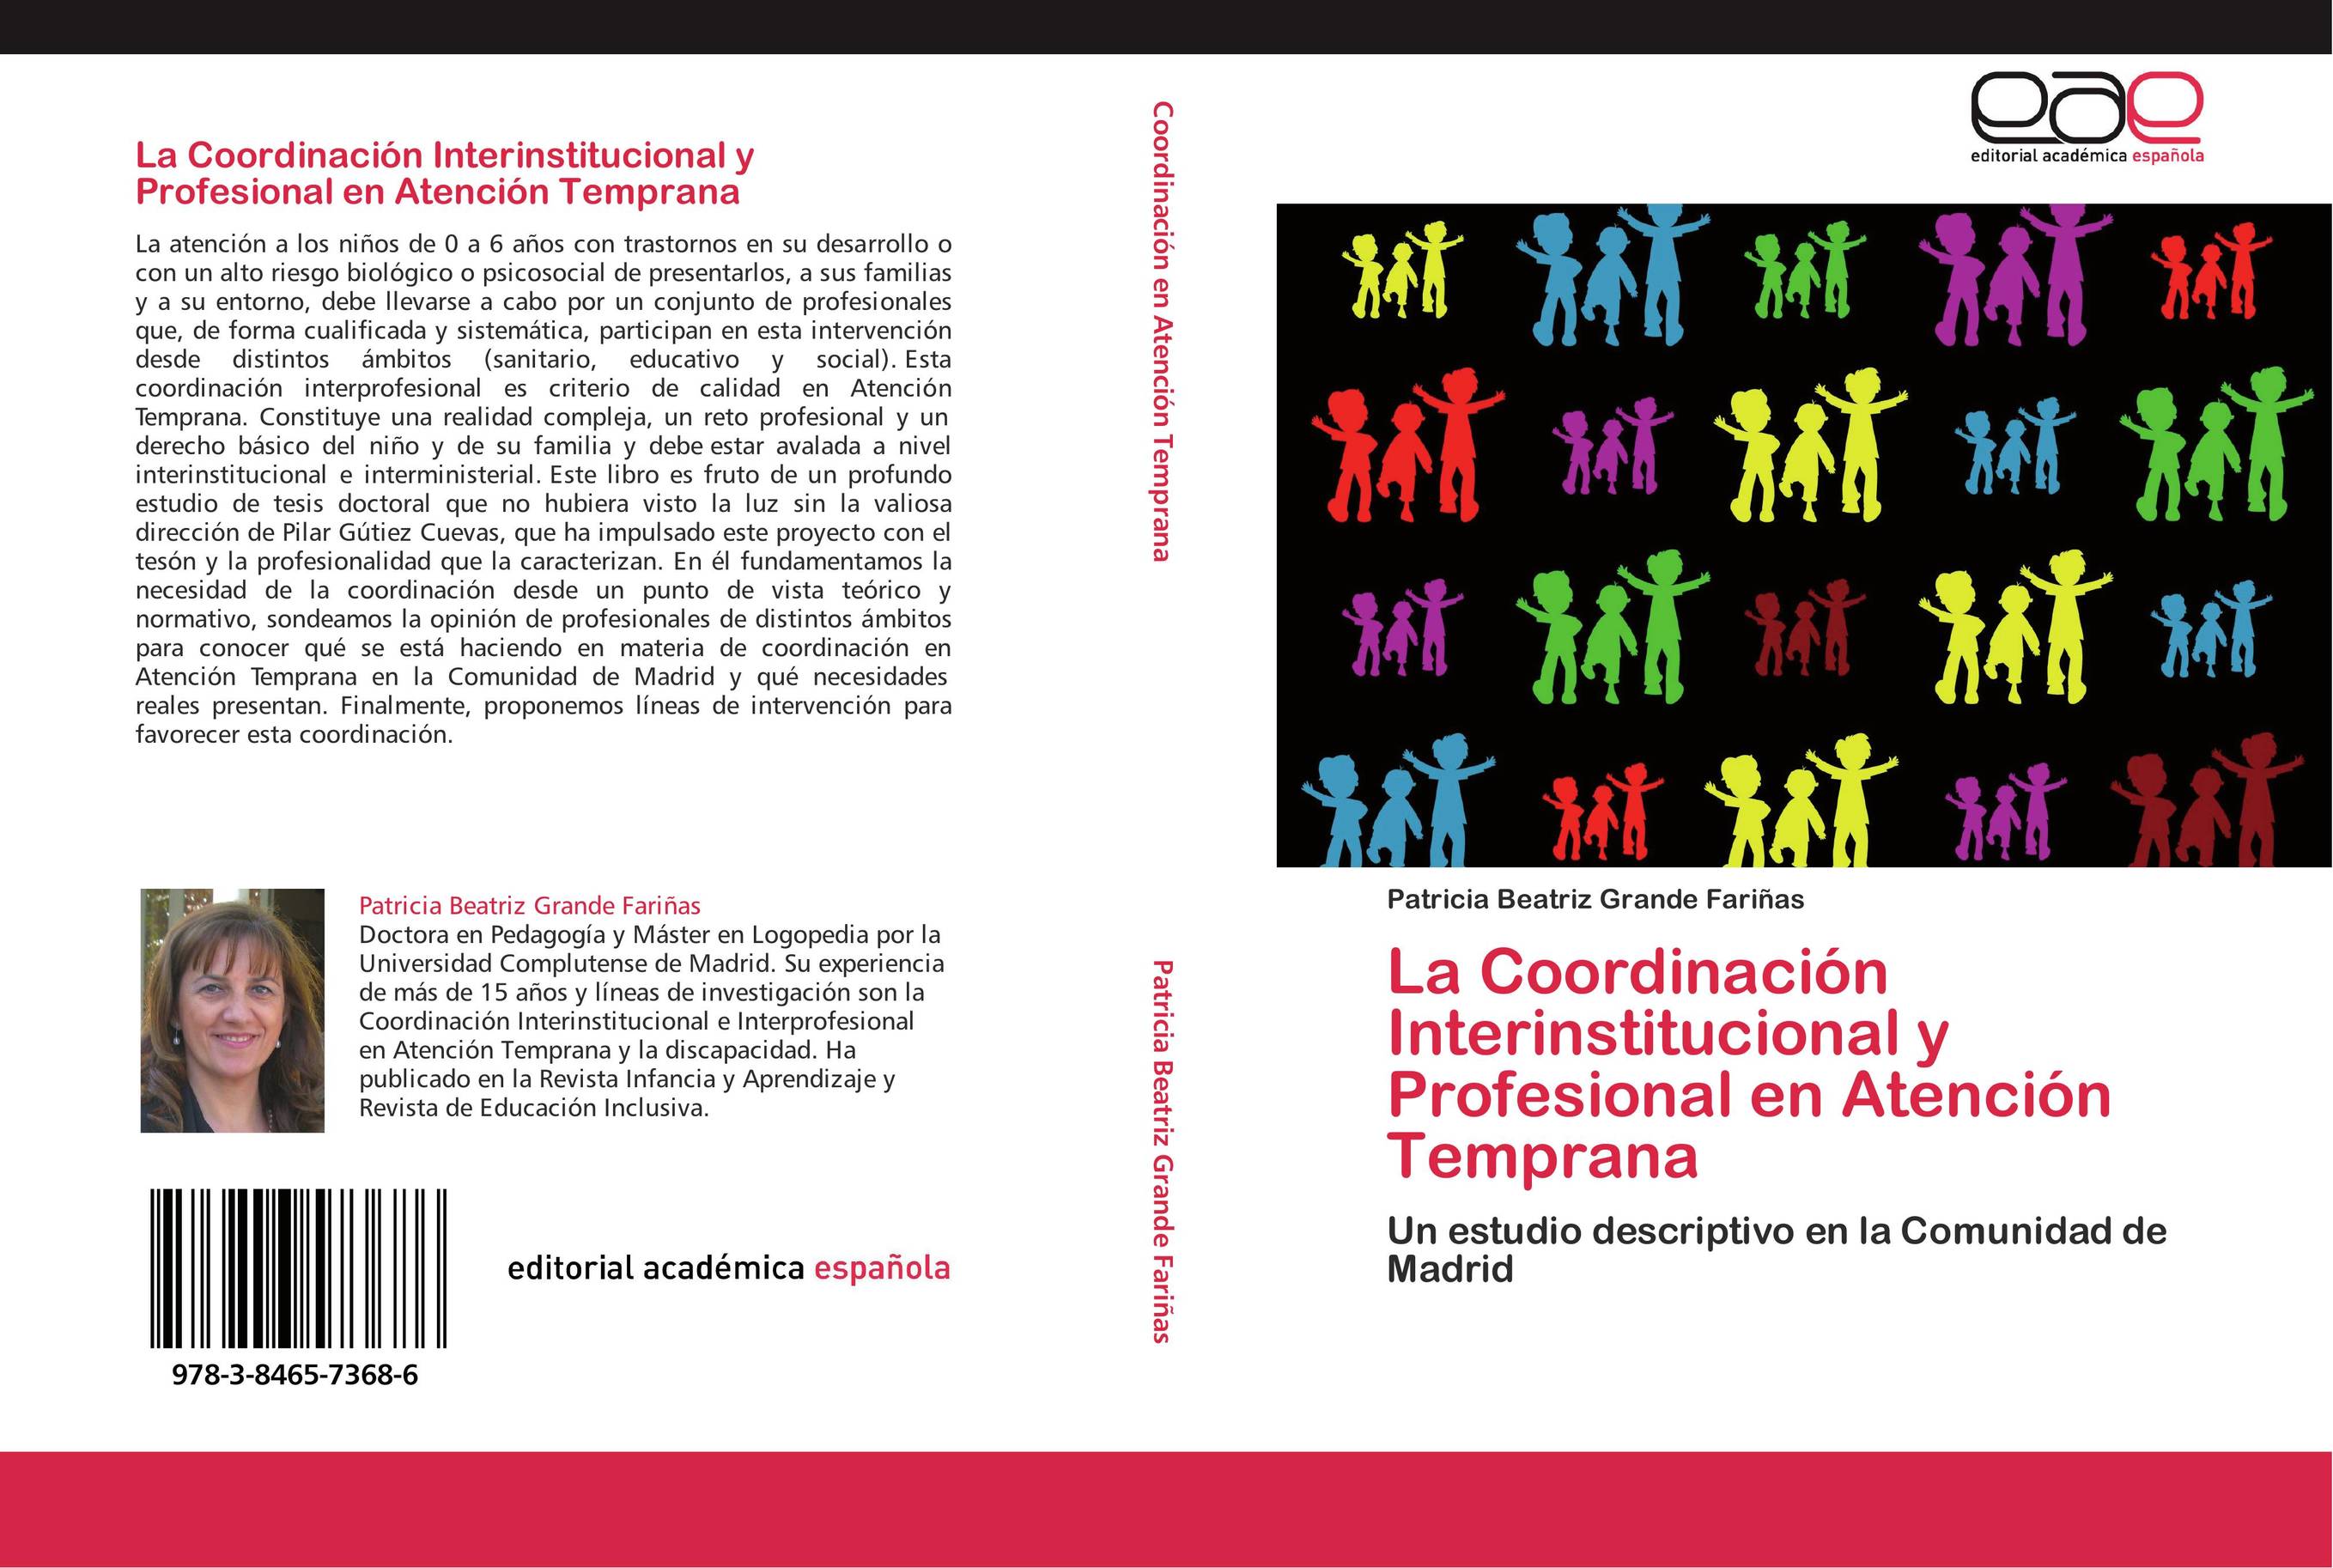 La Coordinación Interinstitucional y Profesional en Atención Temprana